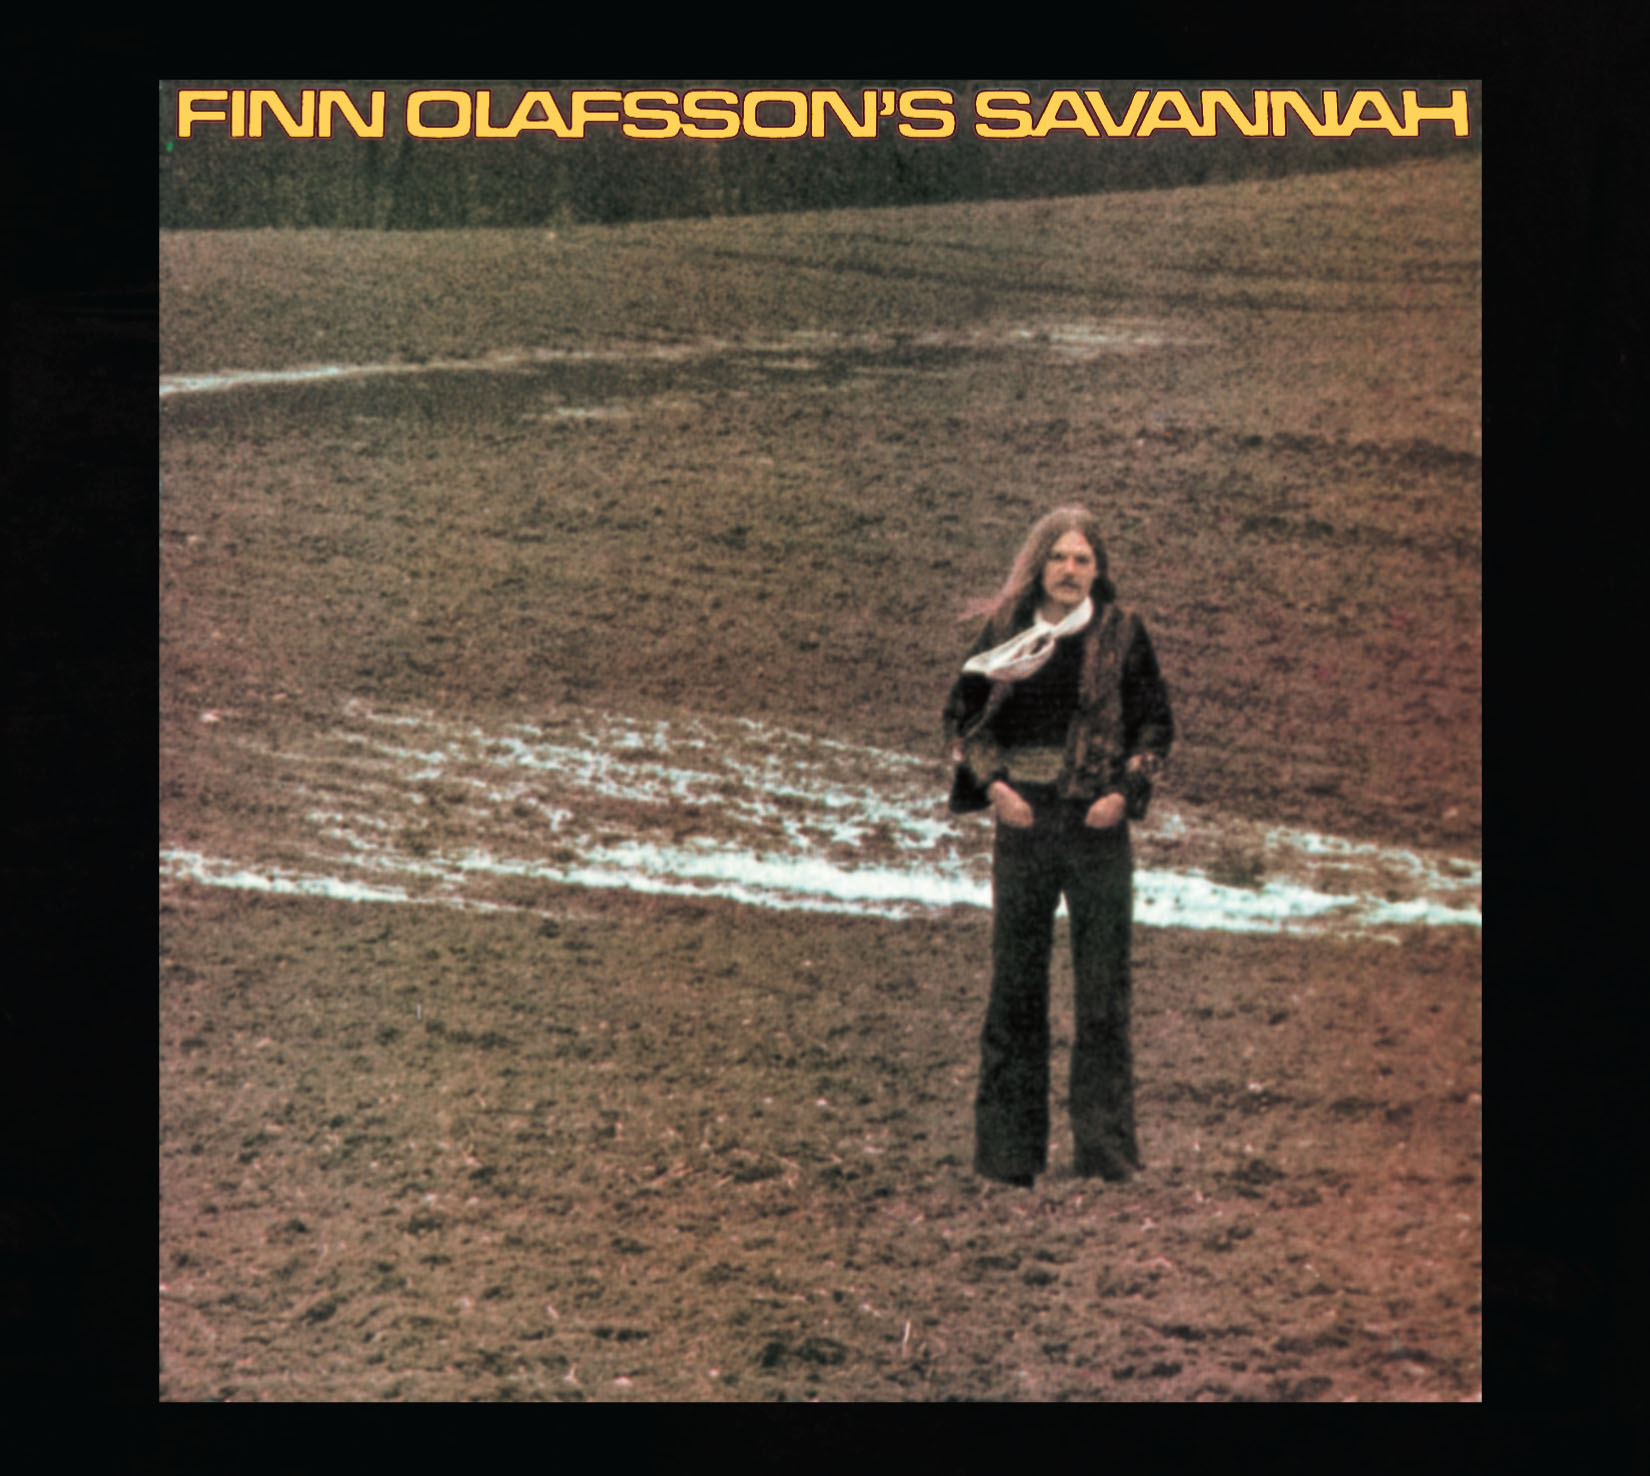 Finn Olafsson's Savannah